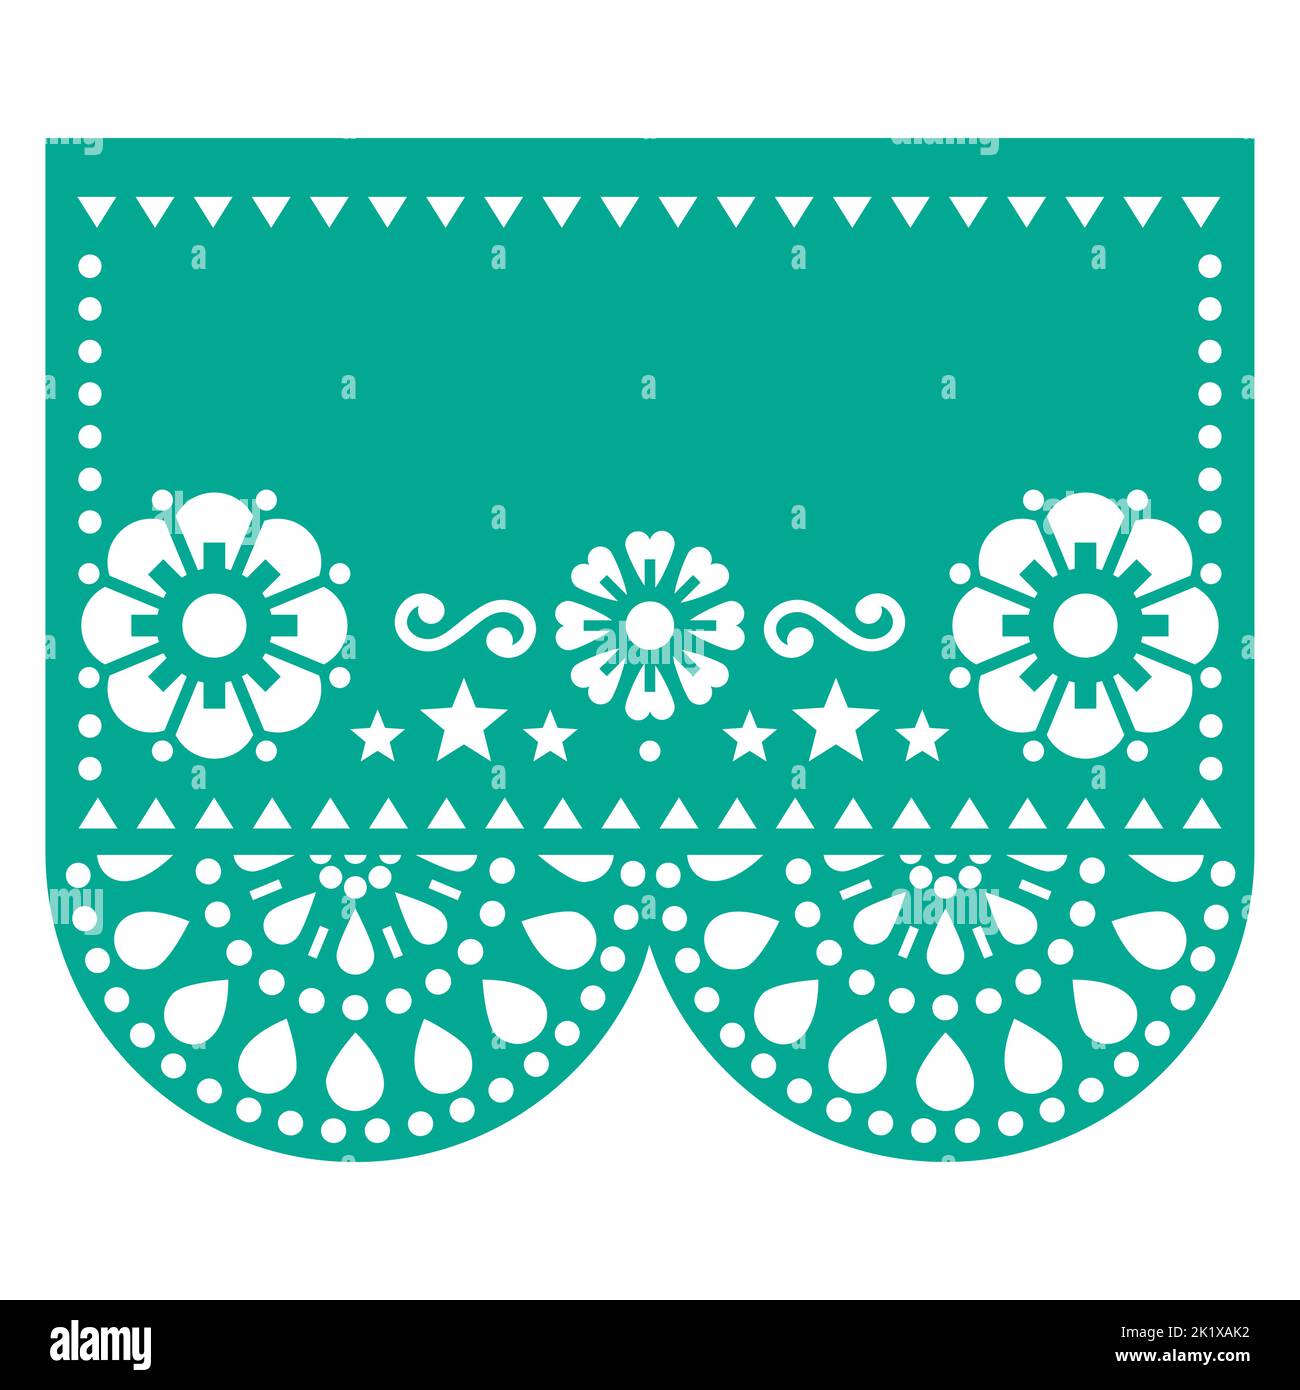 Papel Picado Vektor-Template-Design mit Blumen und geometrischen Formen, mexikanische Ausschnittpapier Girlande Dekoration, leerer Raum in der Mitte Stock Vektor